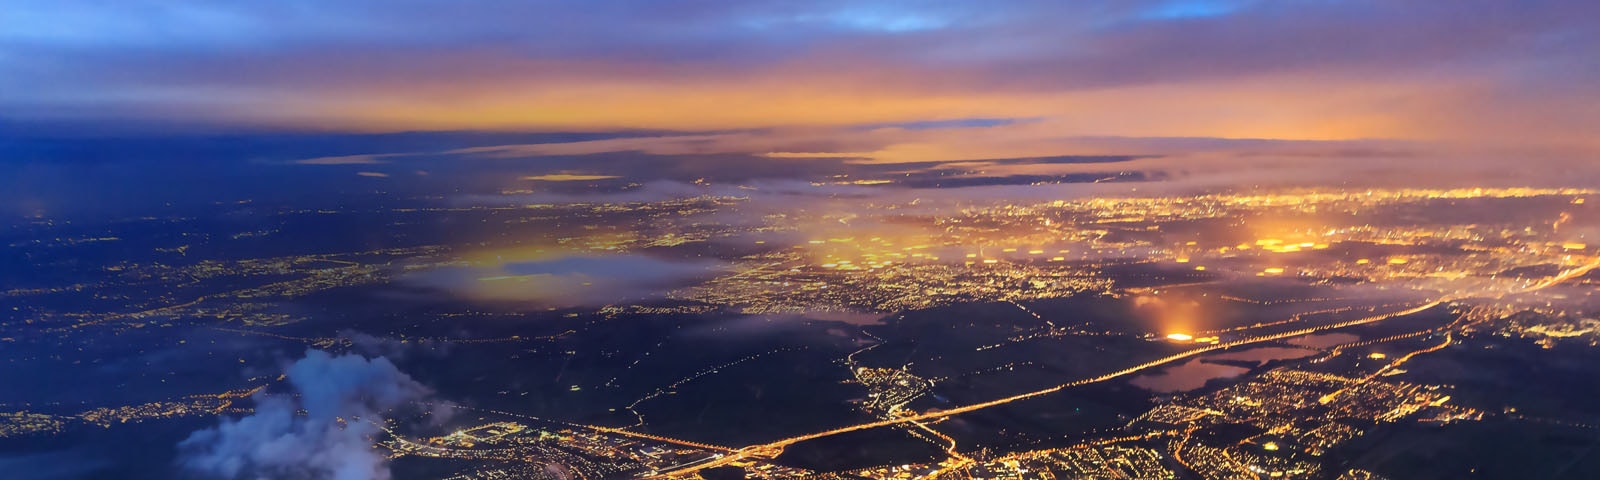 网络技术趋势 - 城市夜景鸟瞰图